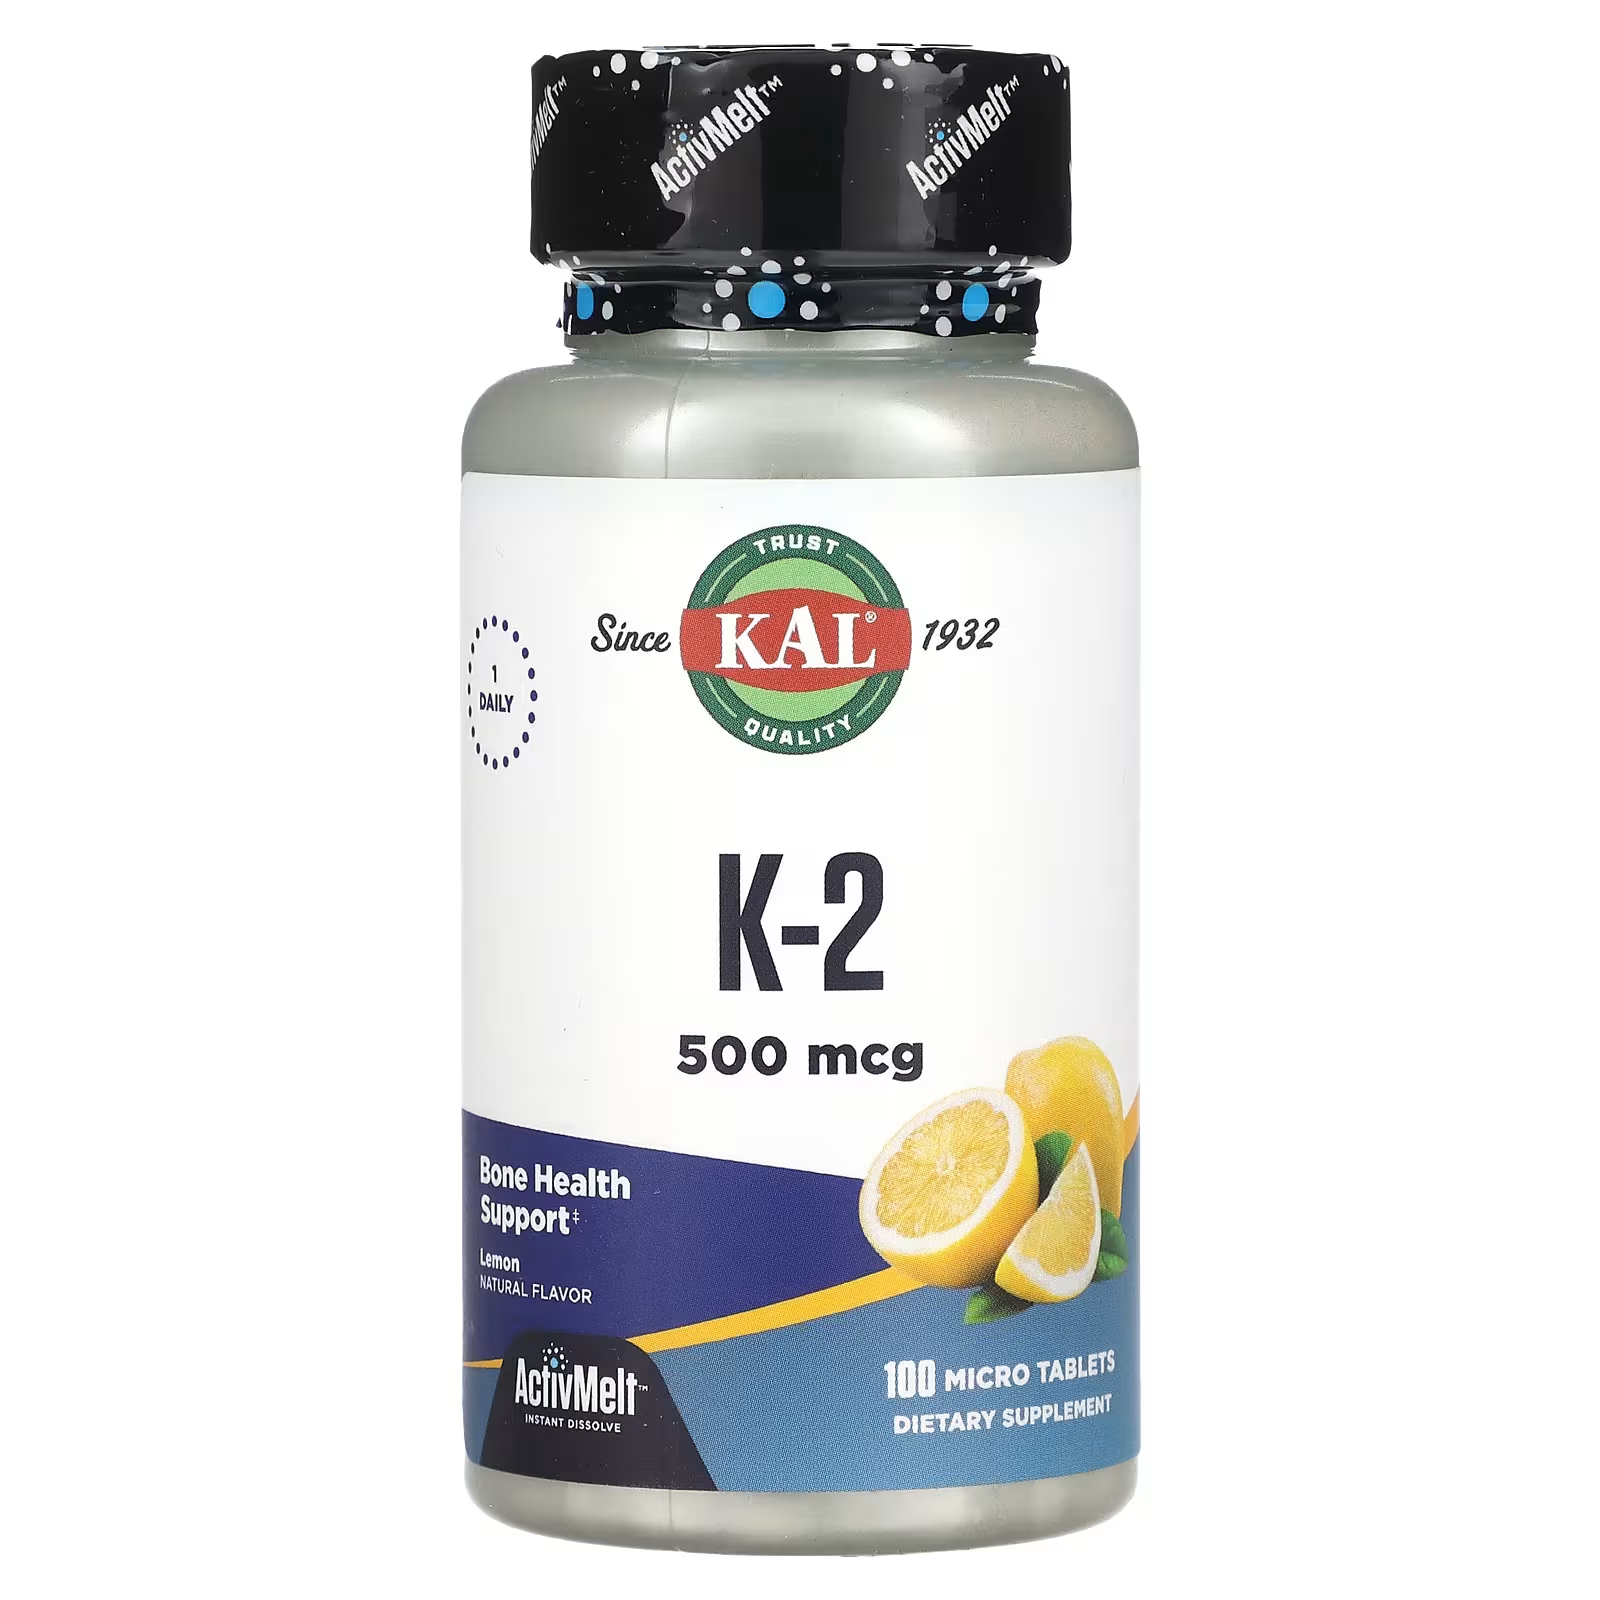 Пищевая добавка Kal K-2 лимон, 100 микротаблеток